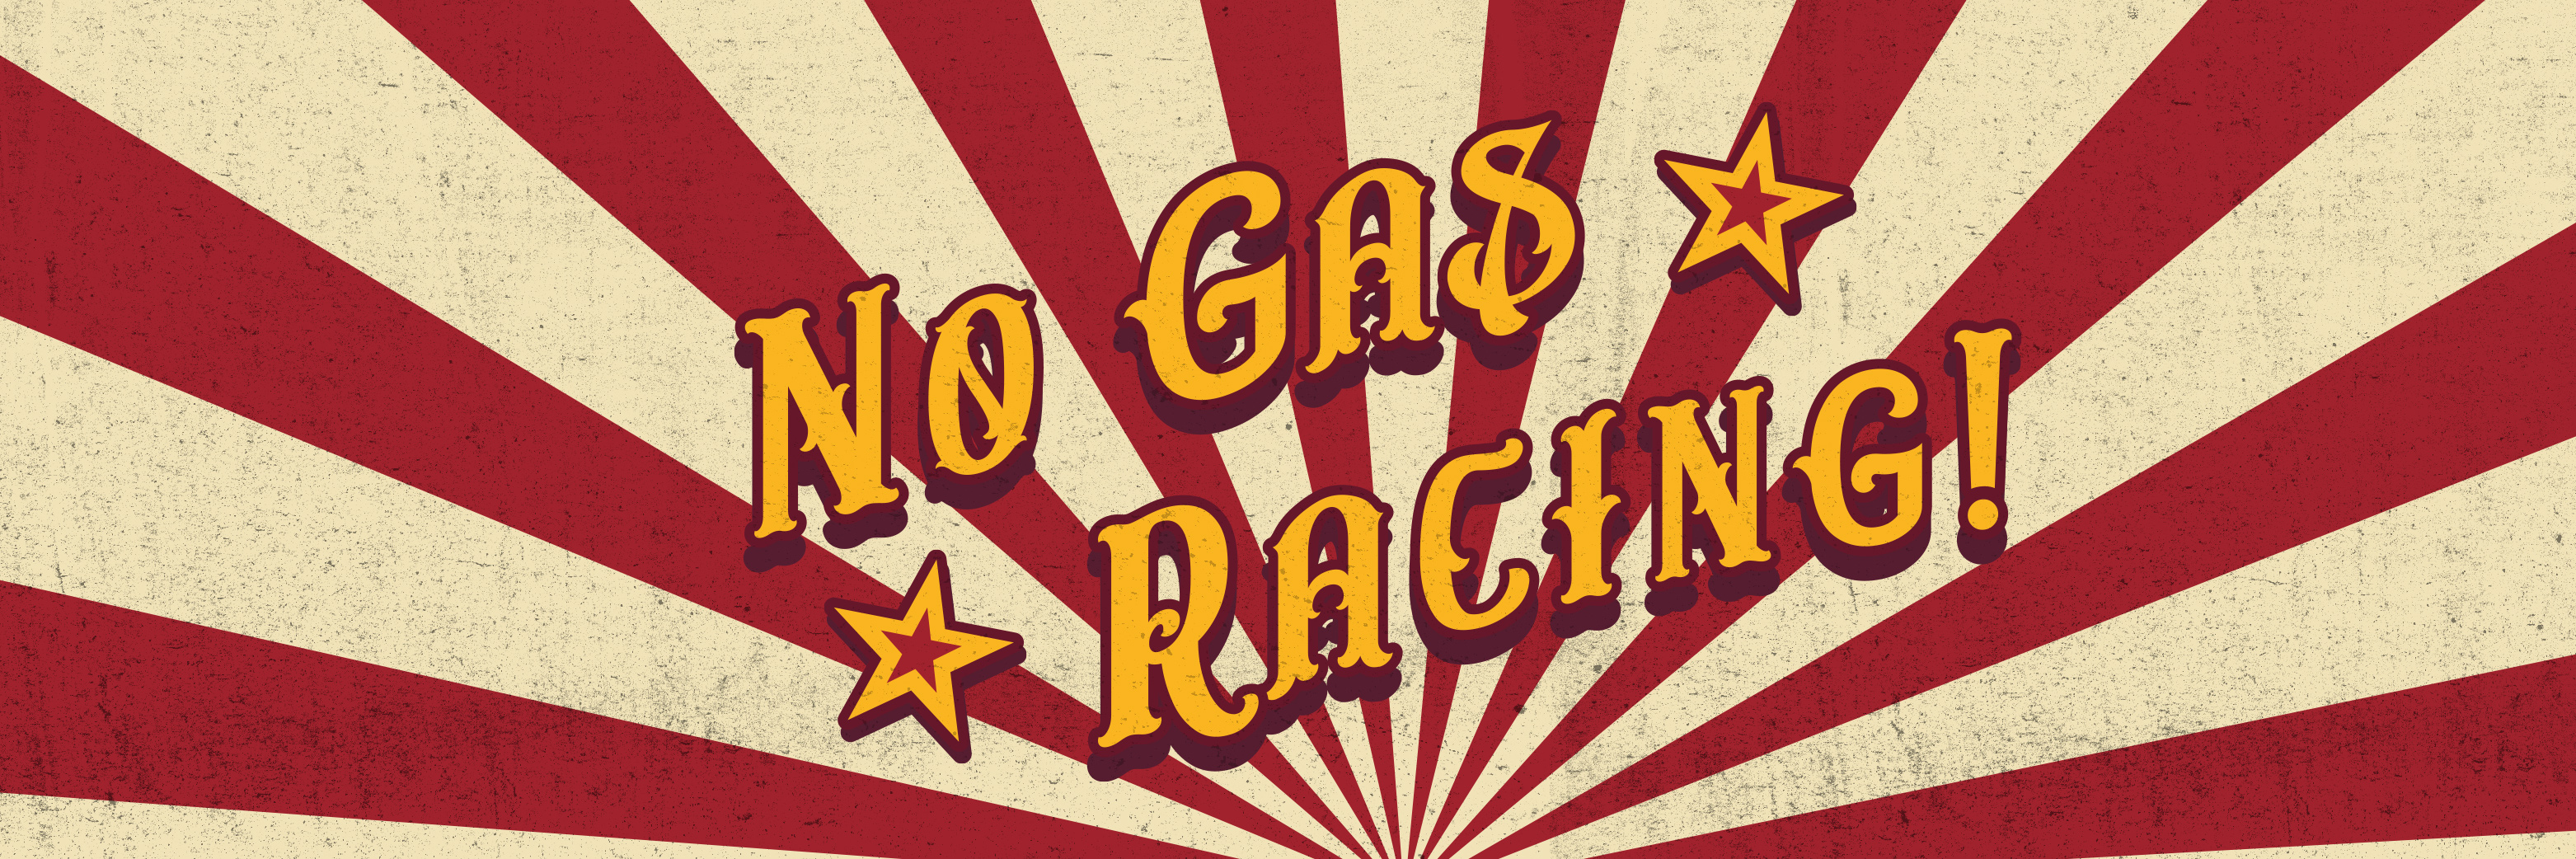 No Gas Racing!